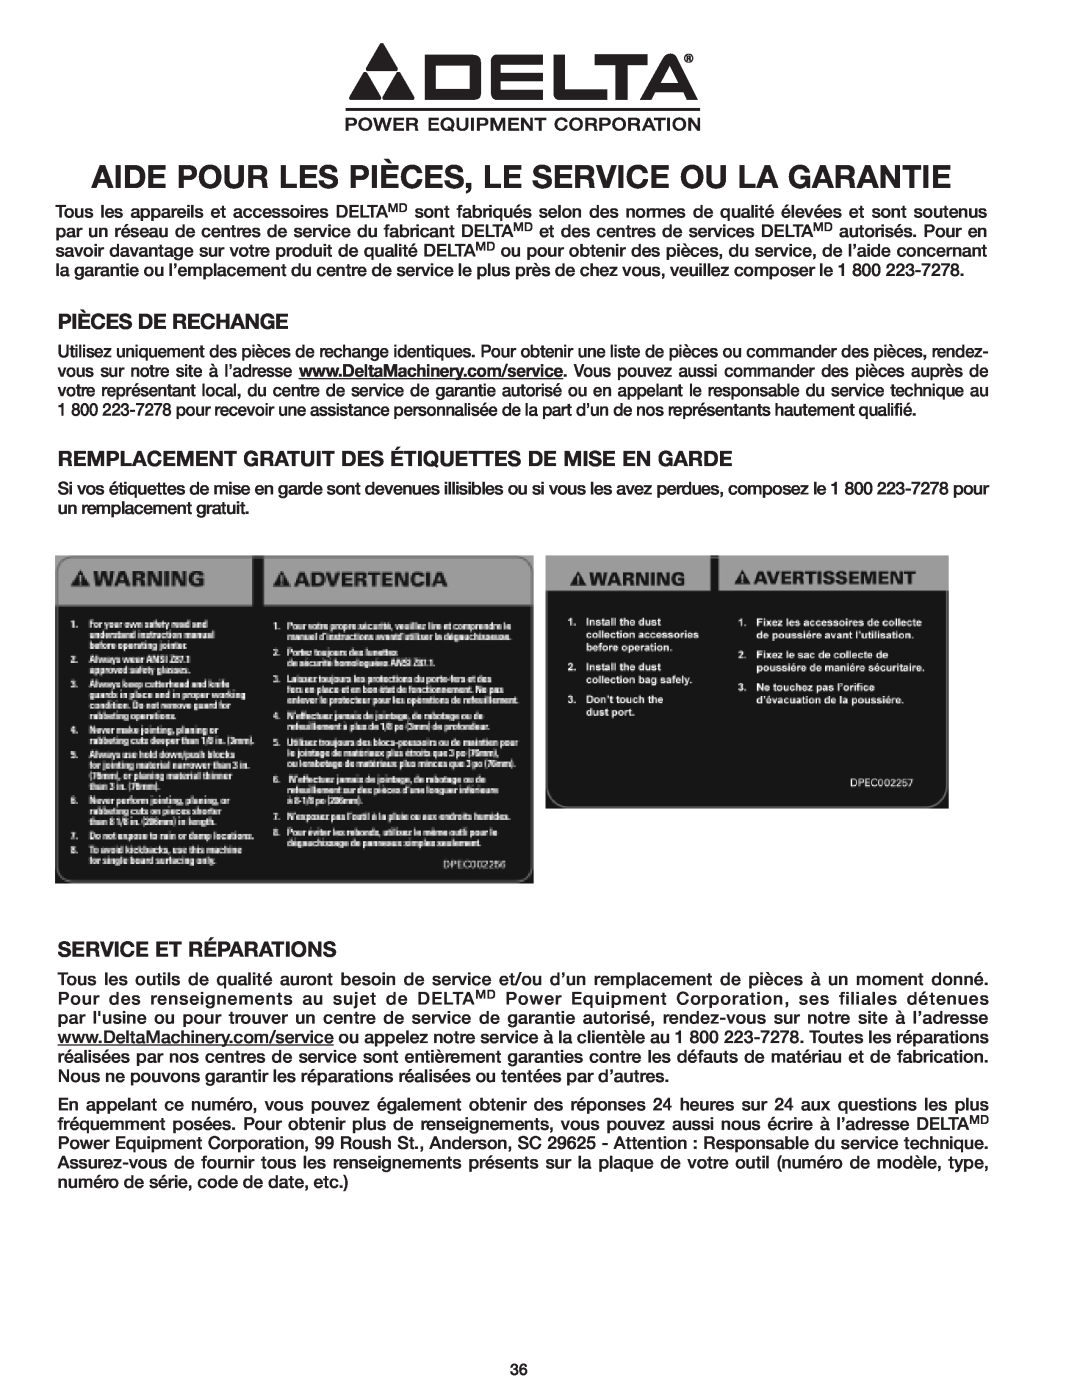 Delta 37-071 instruction manual Aide Pour Les Pièces, Le Service Ou La Garantie, Pièces De Rechange, Service Et Réparations 